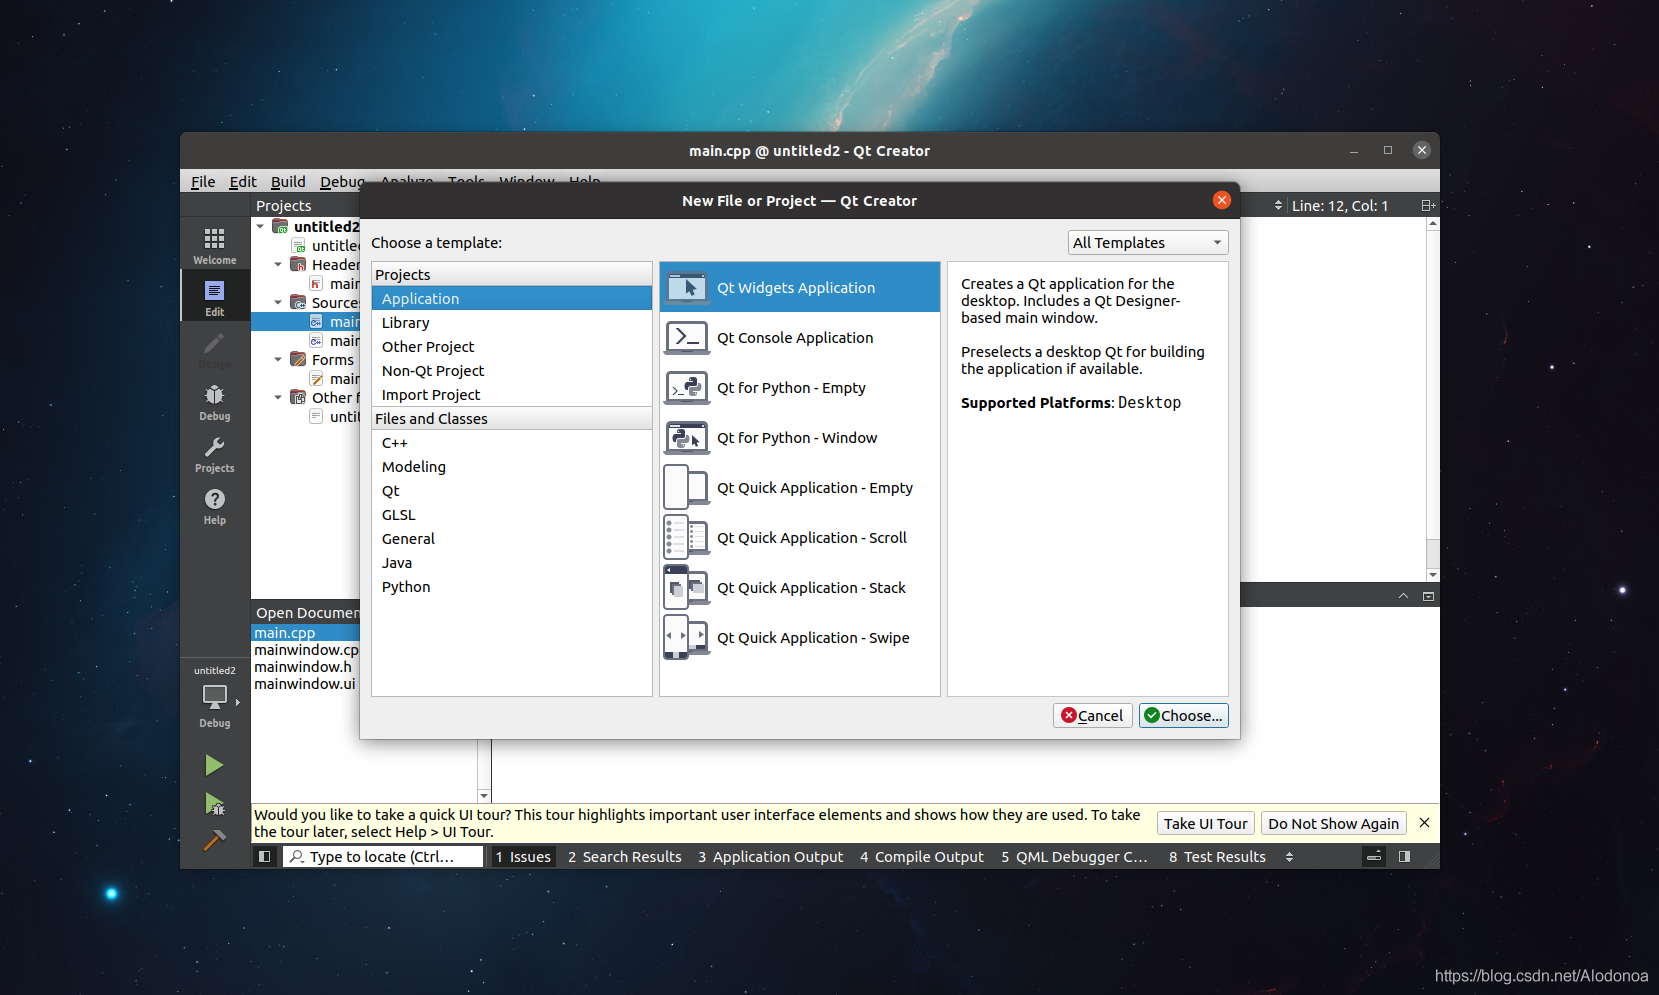 Ubuntu20.04安装、配置、卸载QT5.9.9与QT creator以及第一个编写QT程序